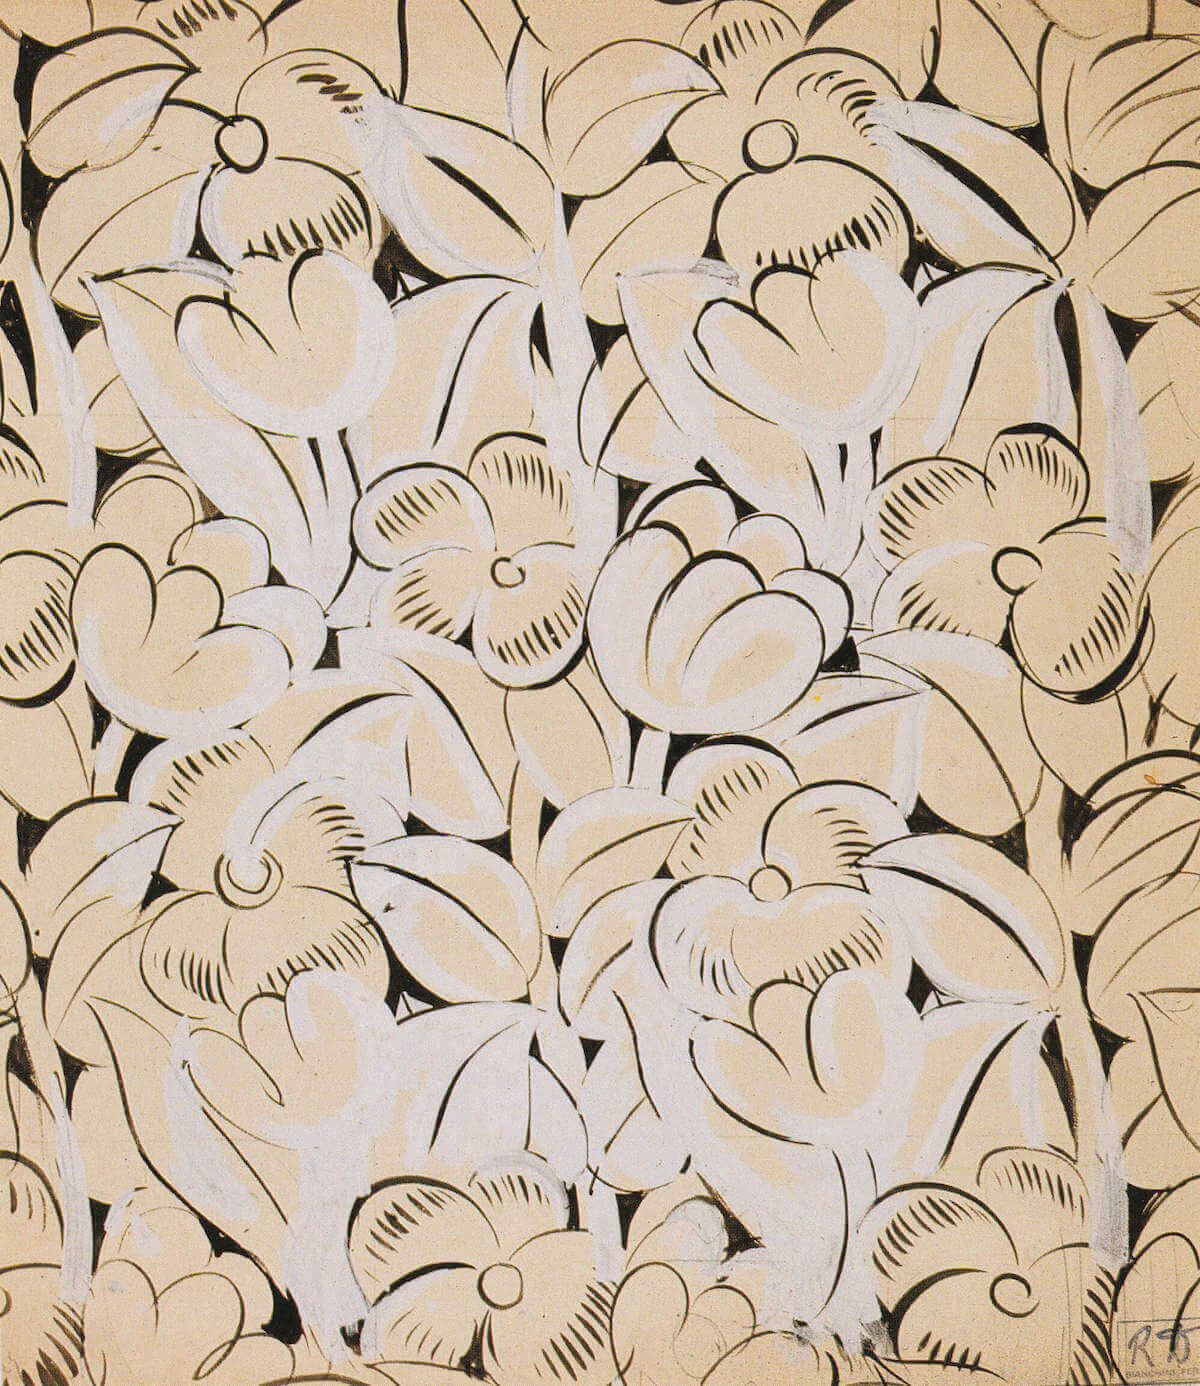 Raoul Dufy, Fleurs blanches et beiges (textile design), gouache, 70 x 60 cm, 27 ½ c 23 ½ inches